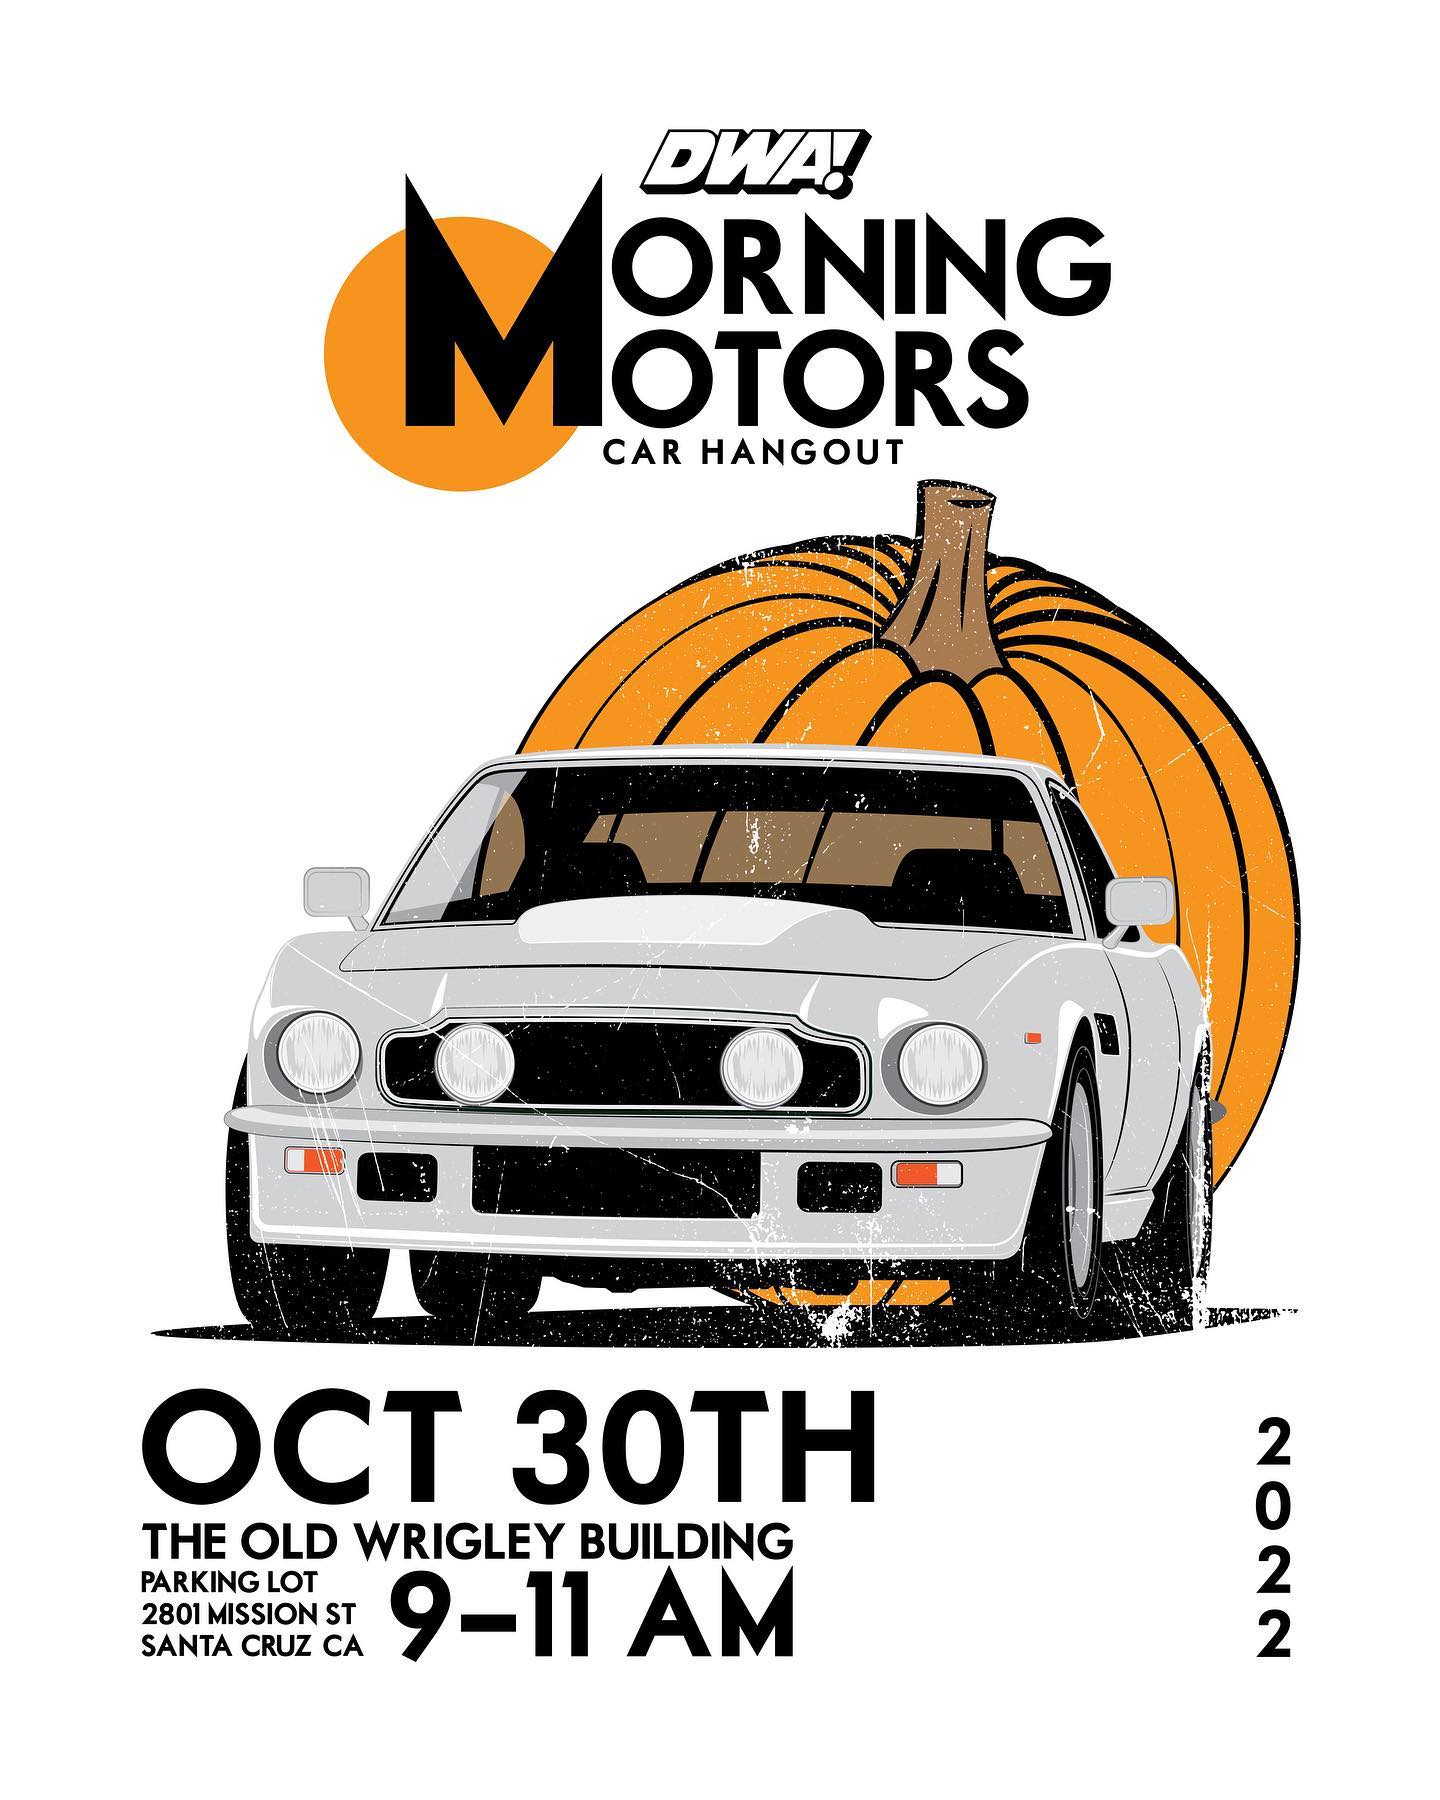 Morning Motors Car Hangout